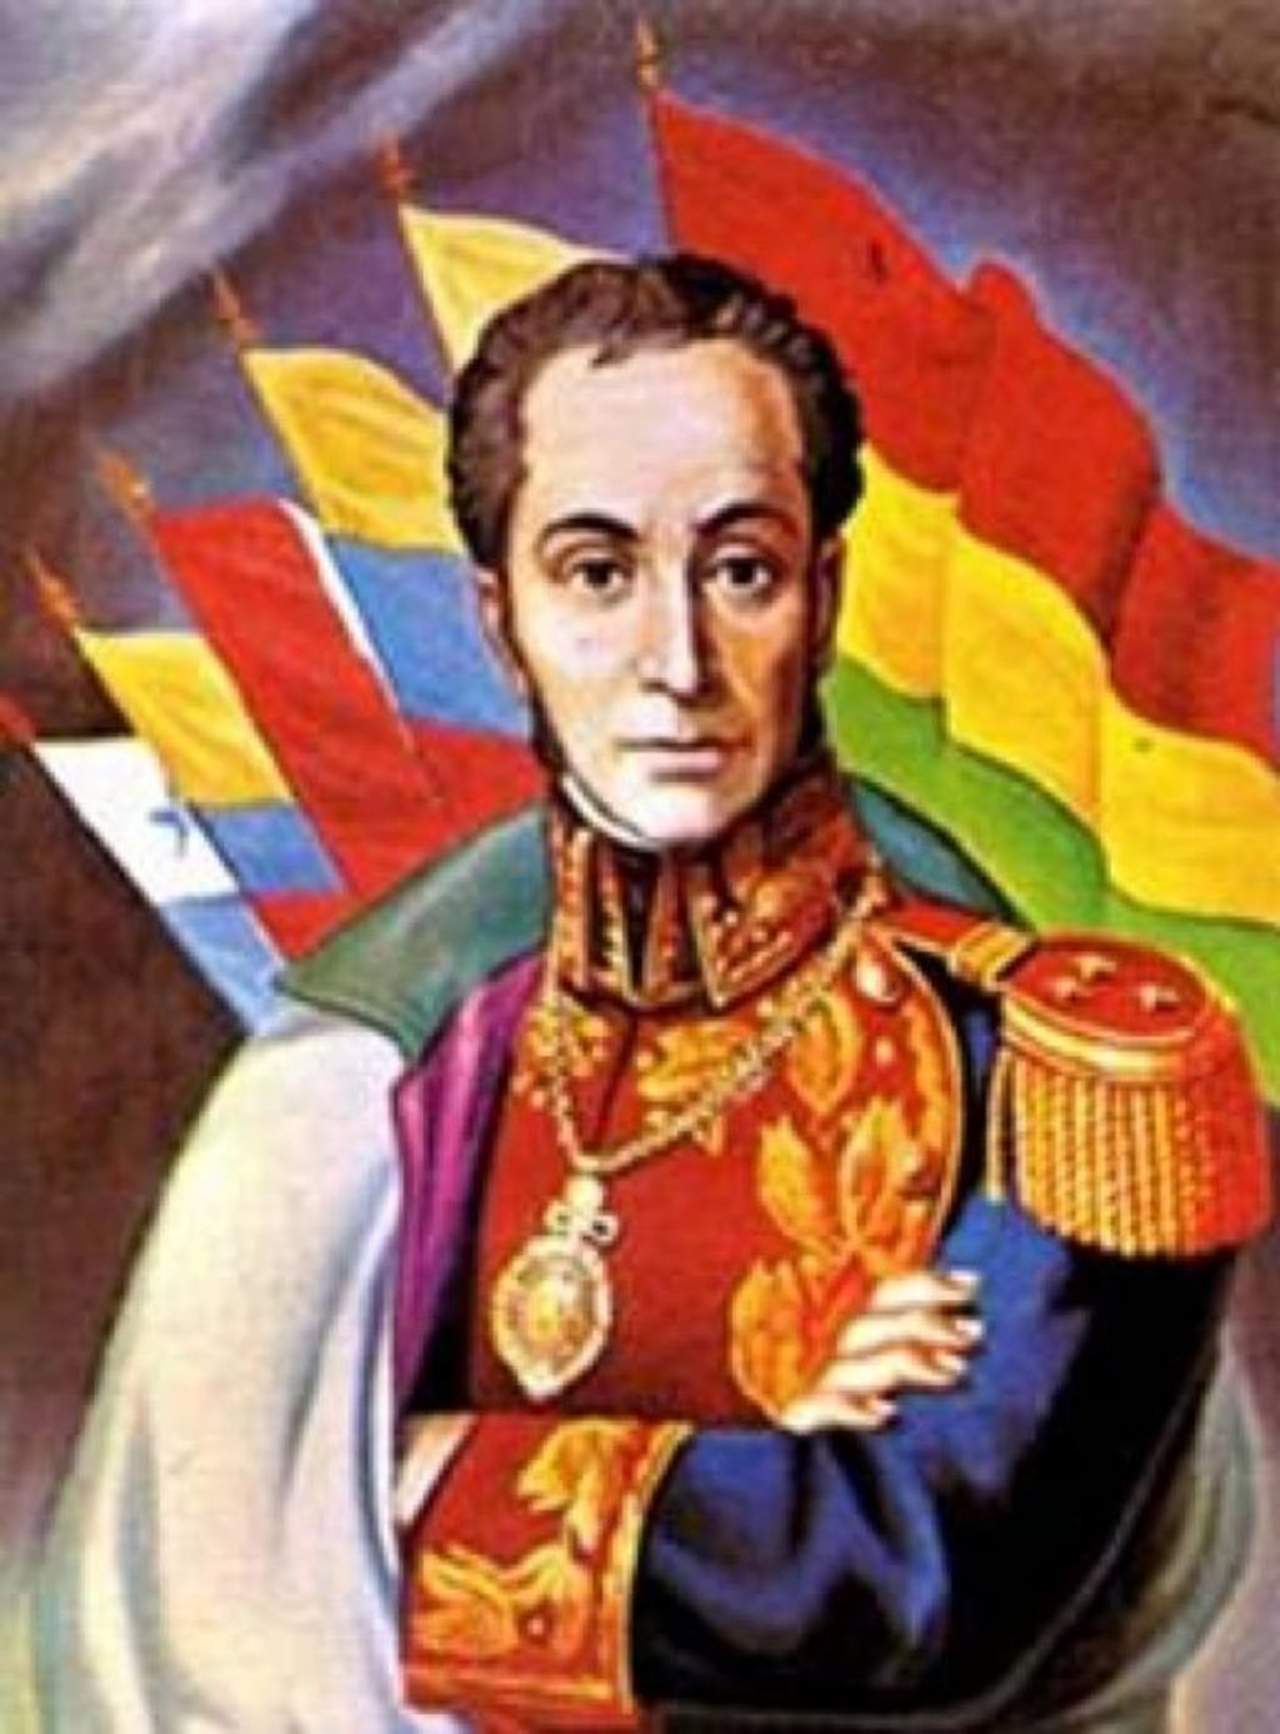 1830: Muere Simón Bolívar, el 'Libertador de América'